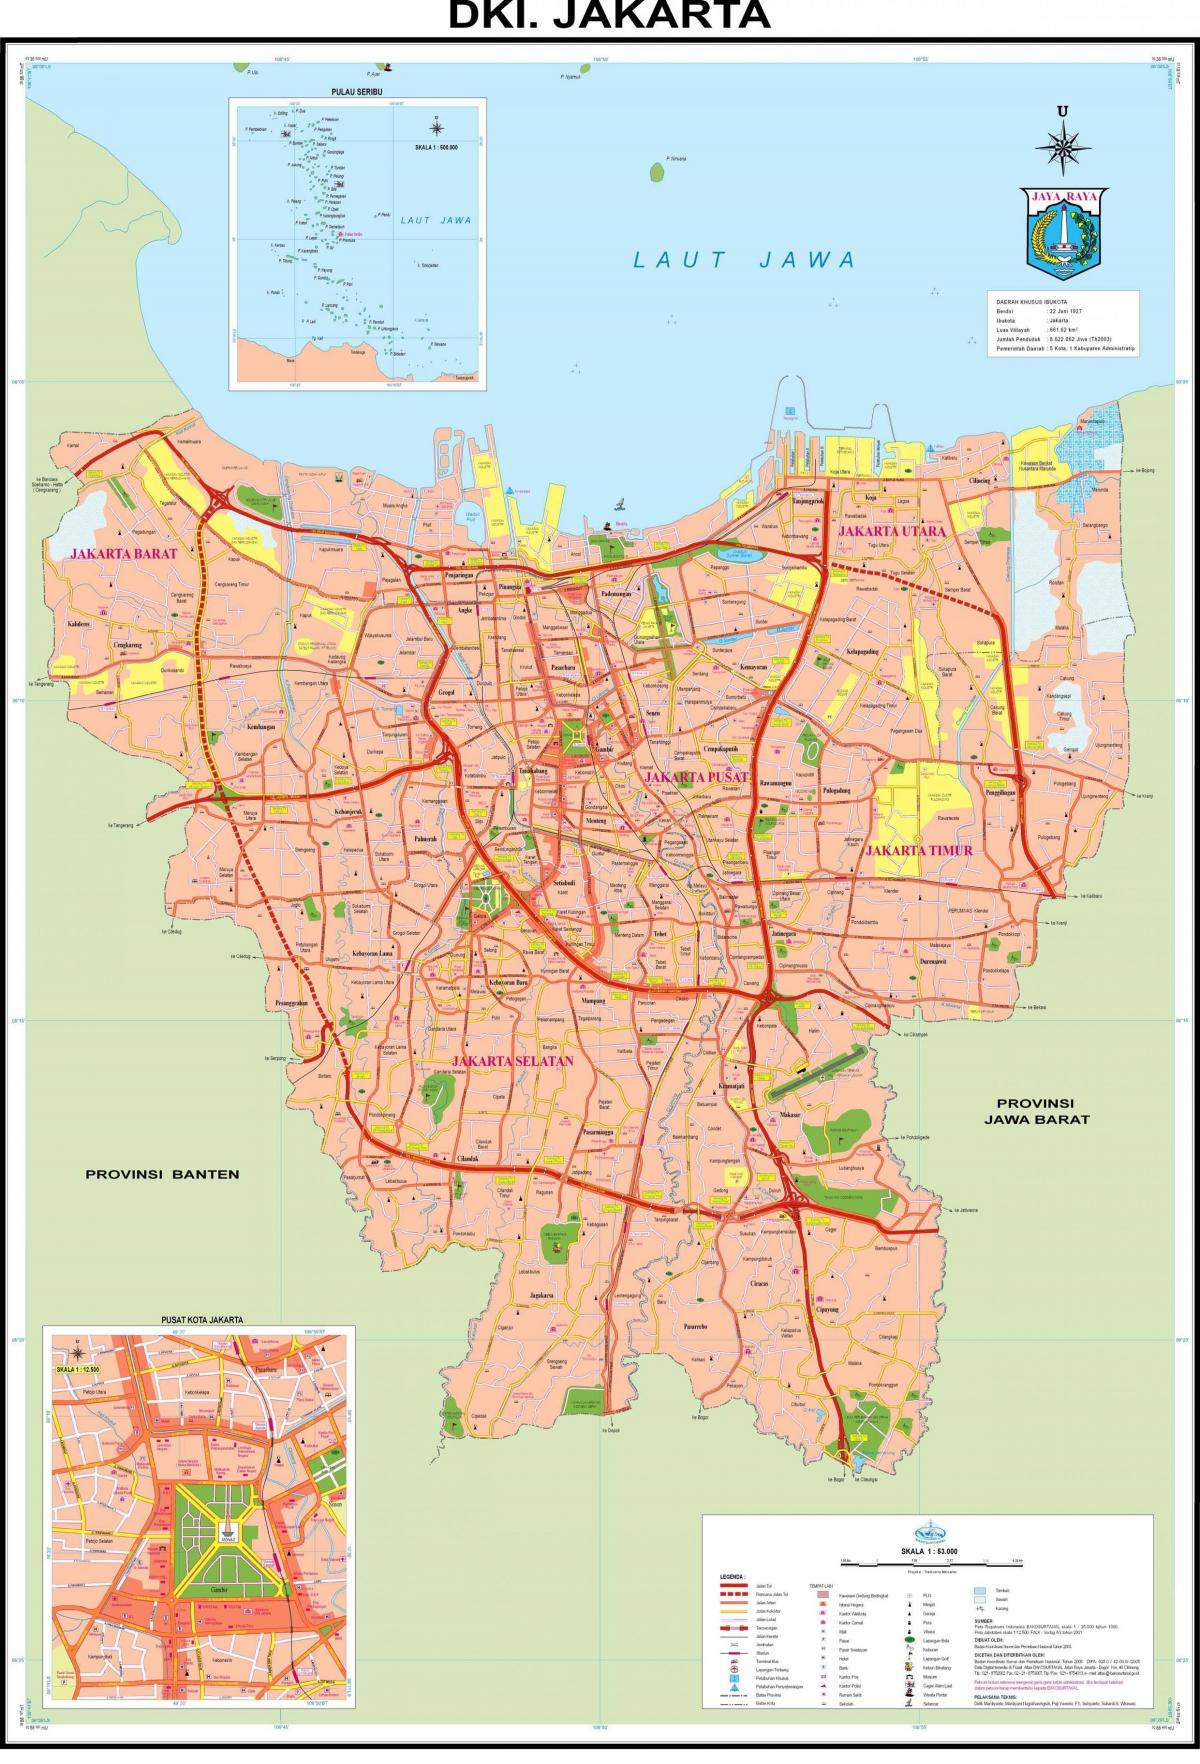 Iacarta mapa da cidade